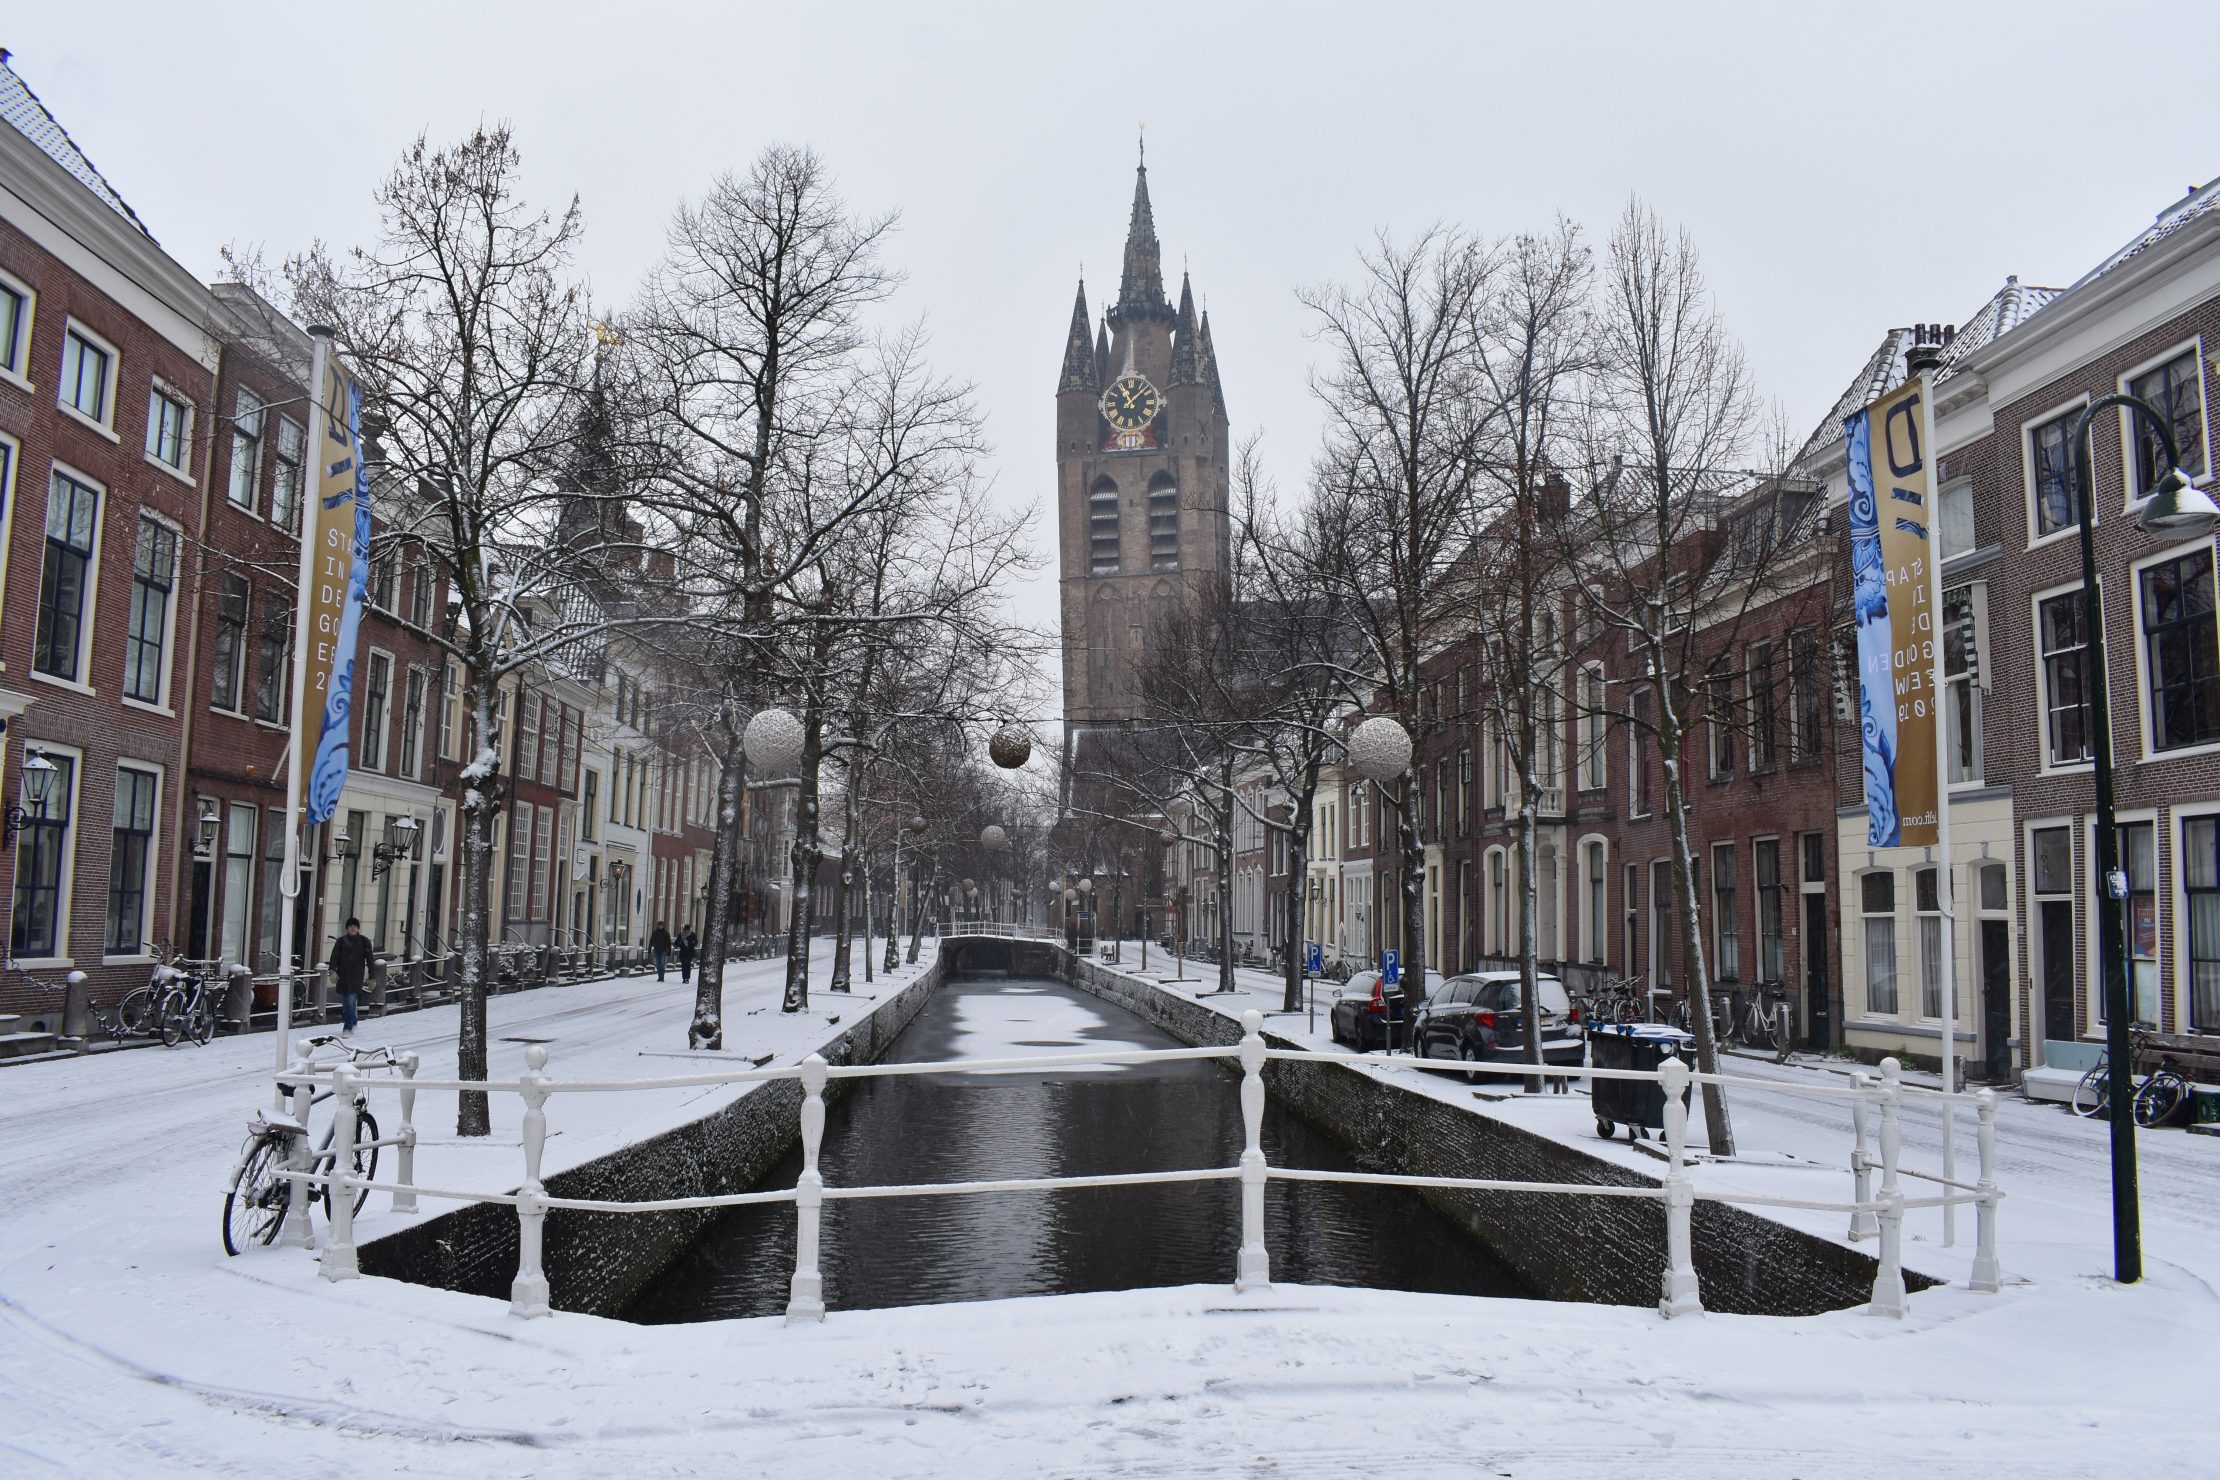 Winter in Delft